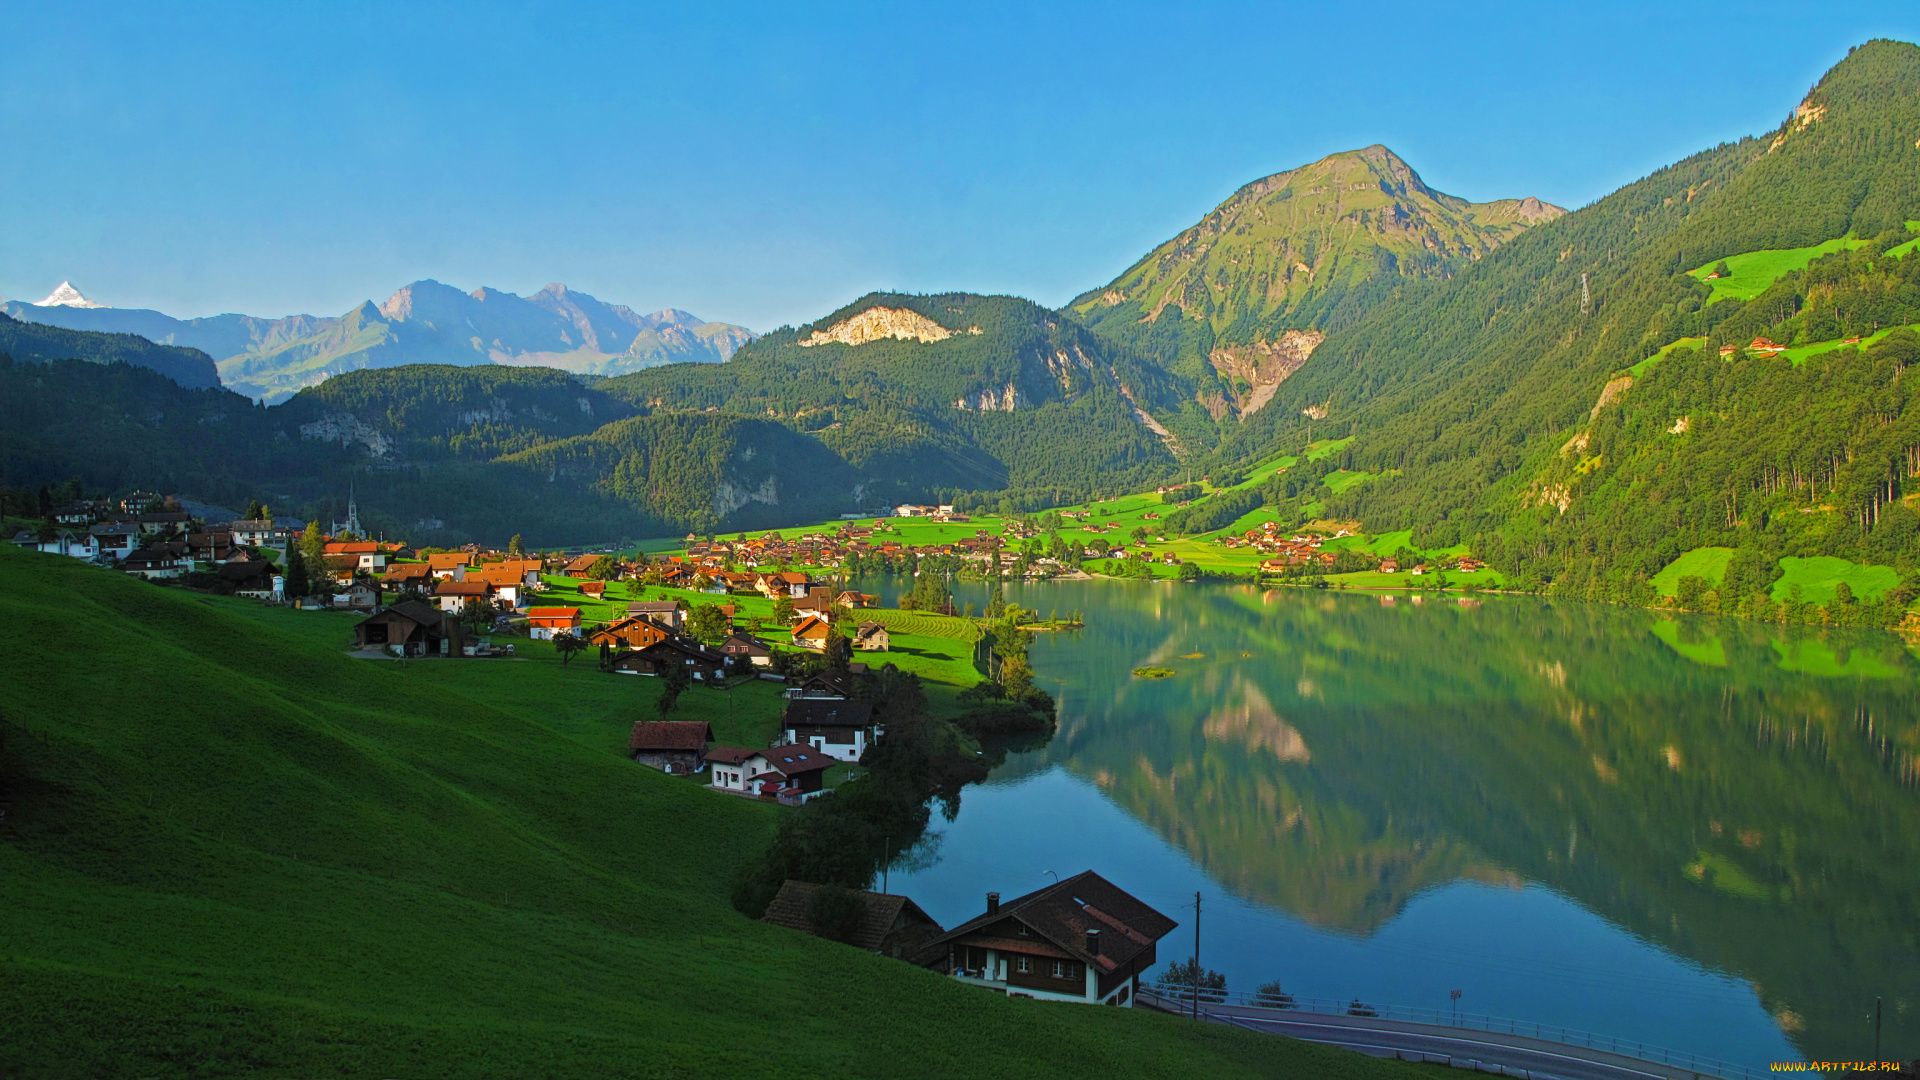 Switzerland Mountains In Summer